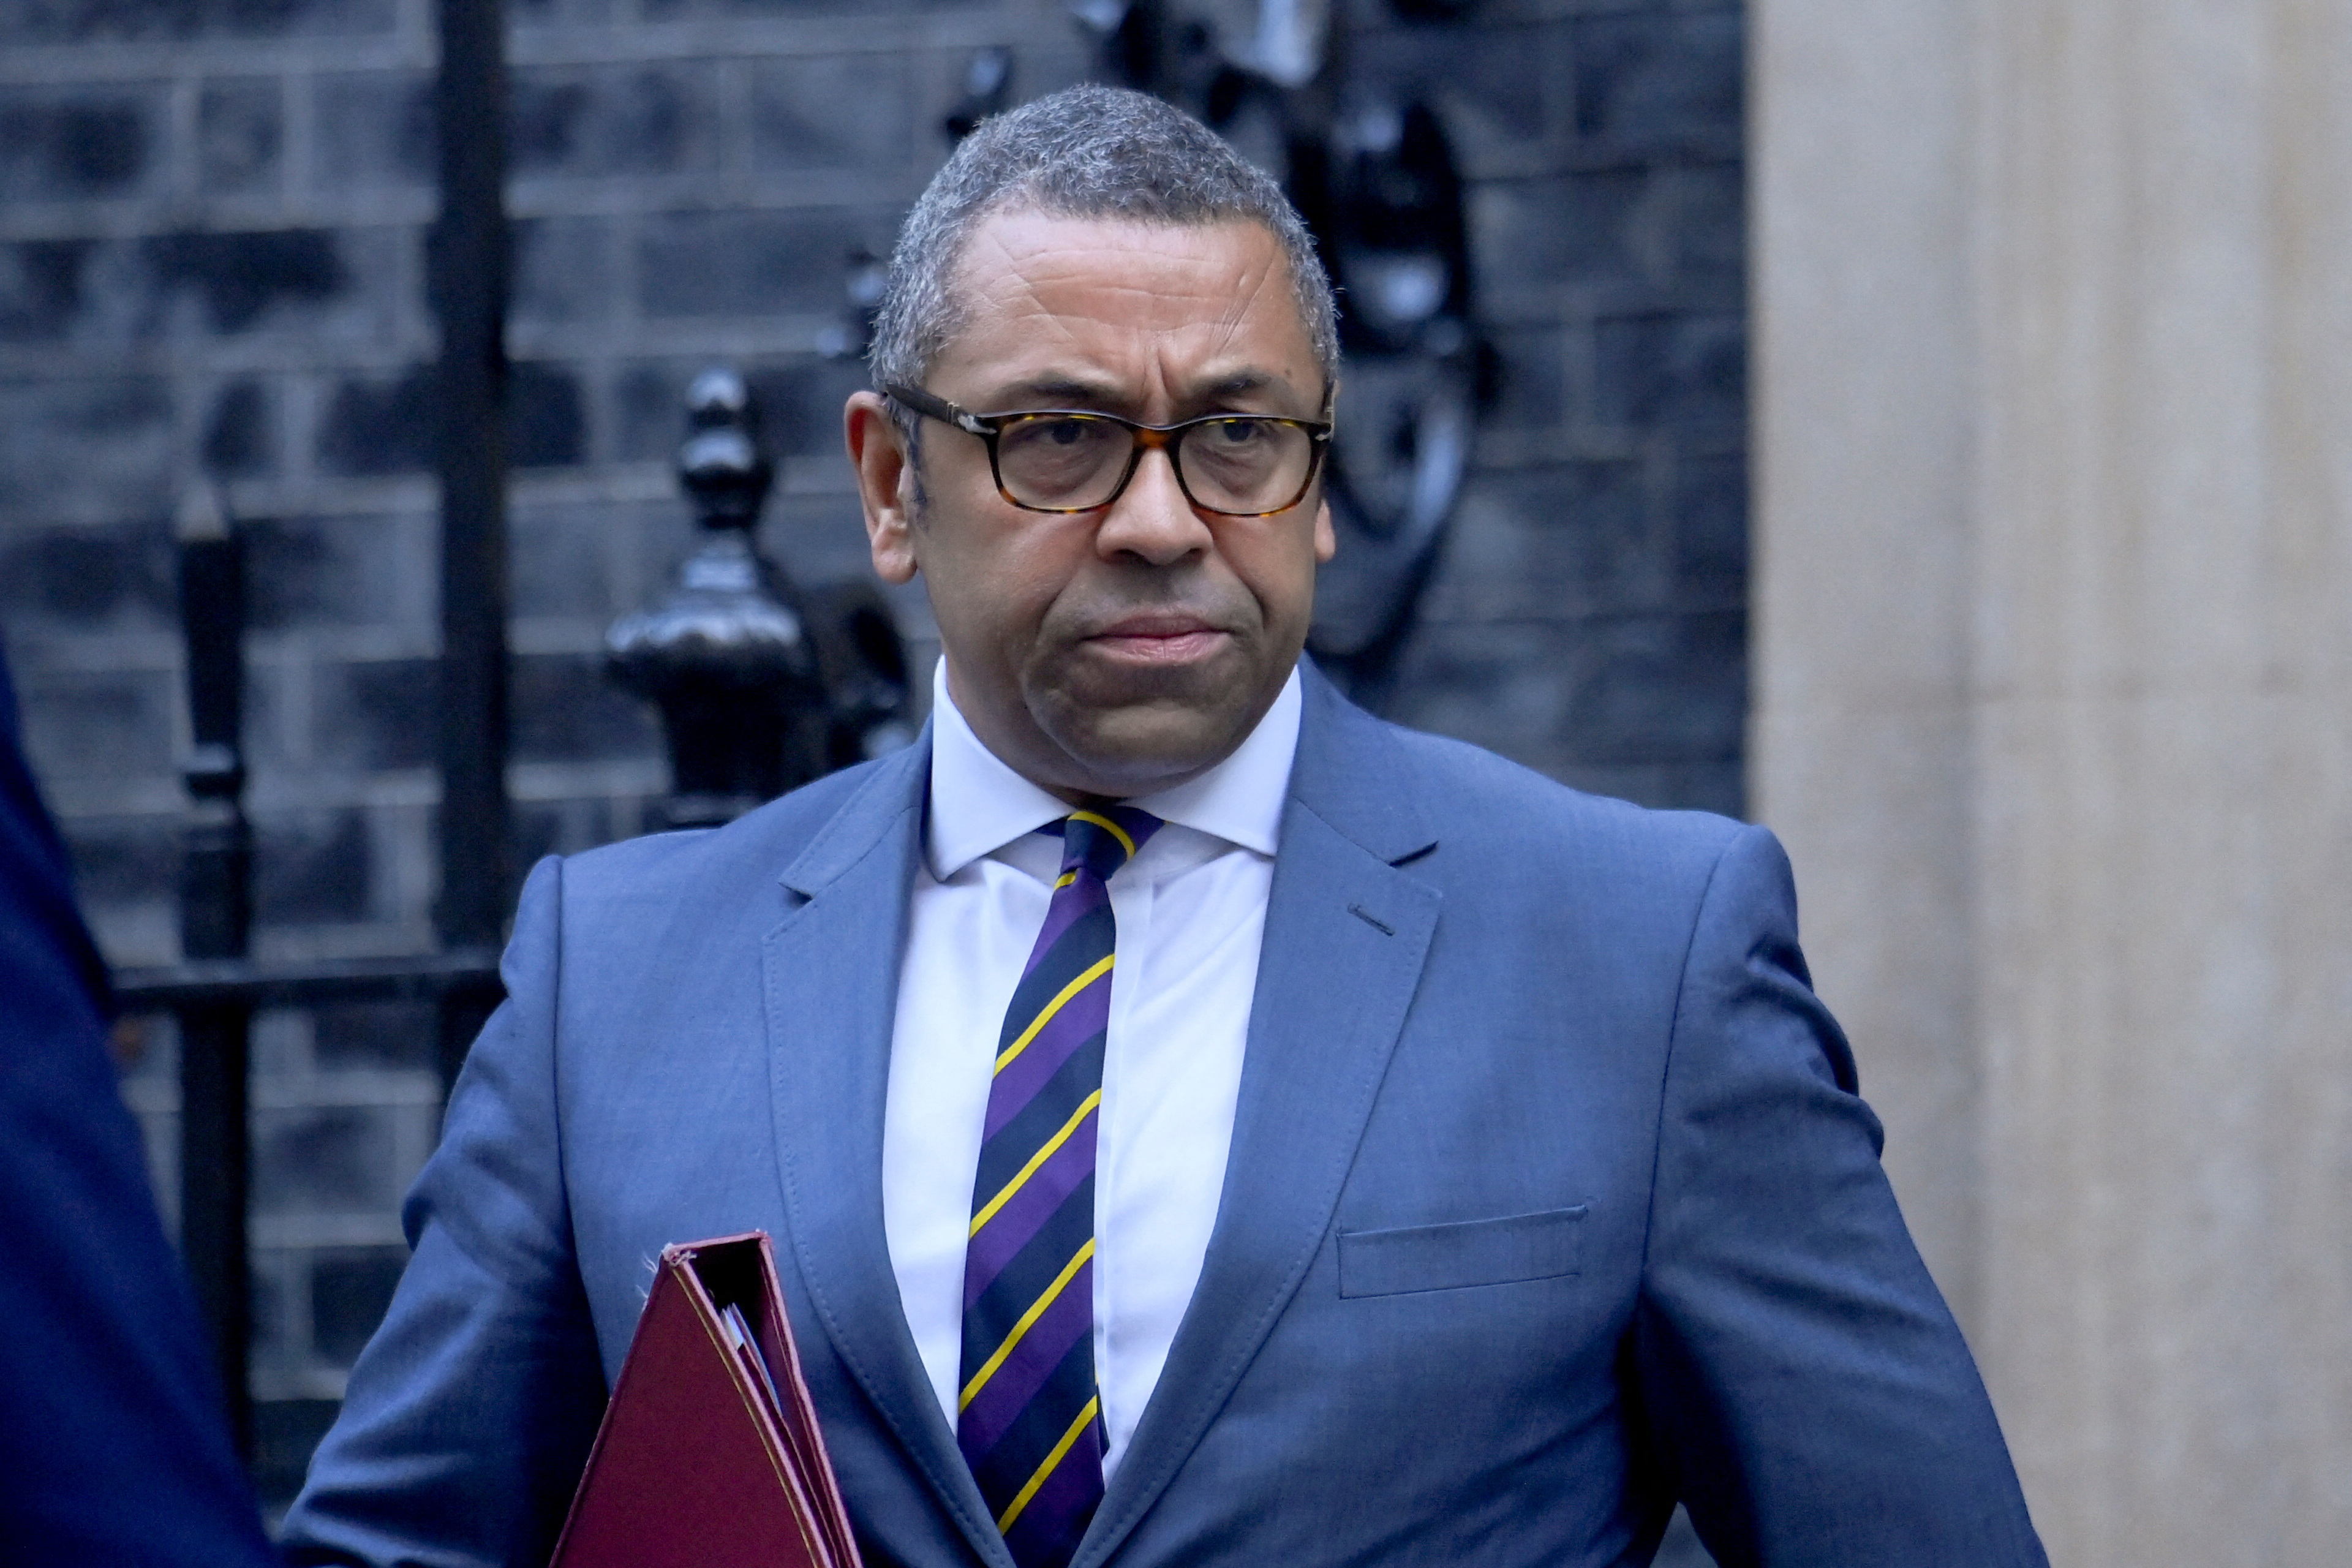 El ministro de Asuntos Exteriores británico, James Cleverly, camina frente al número 10 de Downing Street en Londres, Gran Bretaña, el 18 de octubre de 2022. REUTERS/Toby Melville